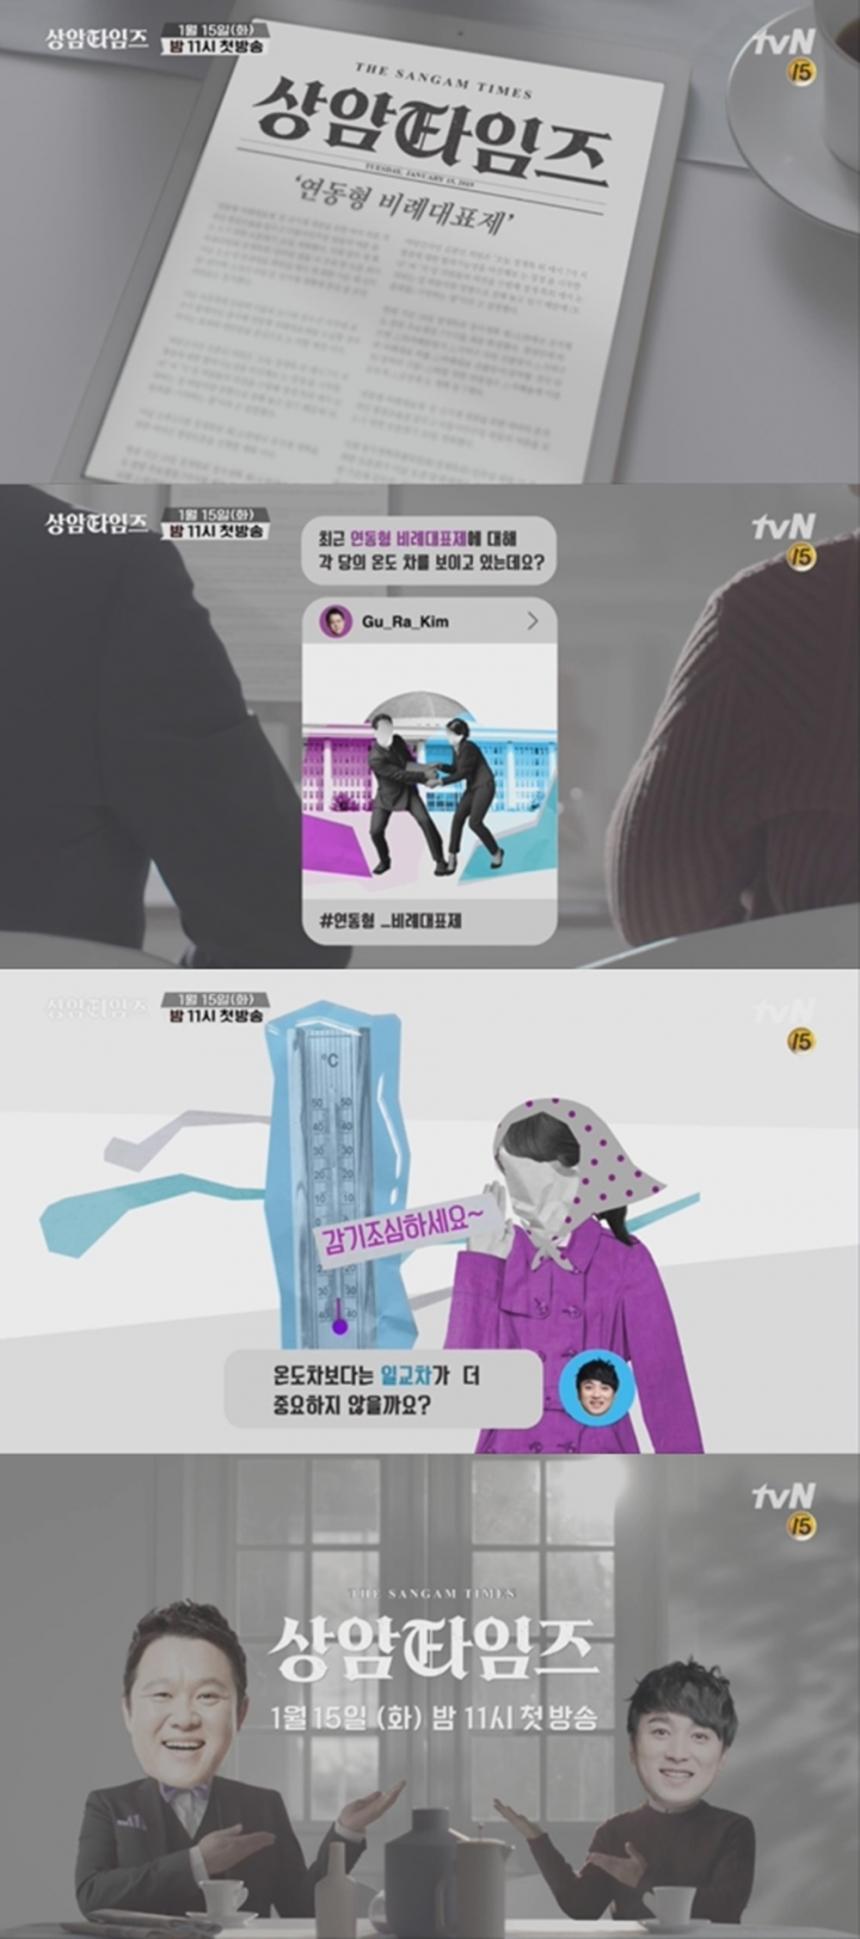 ‘상암타임즈’ 1차 티저 이미지 / tvN